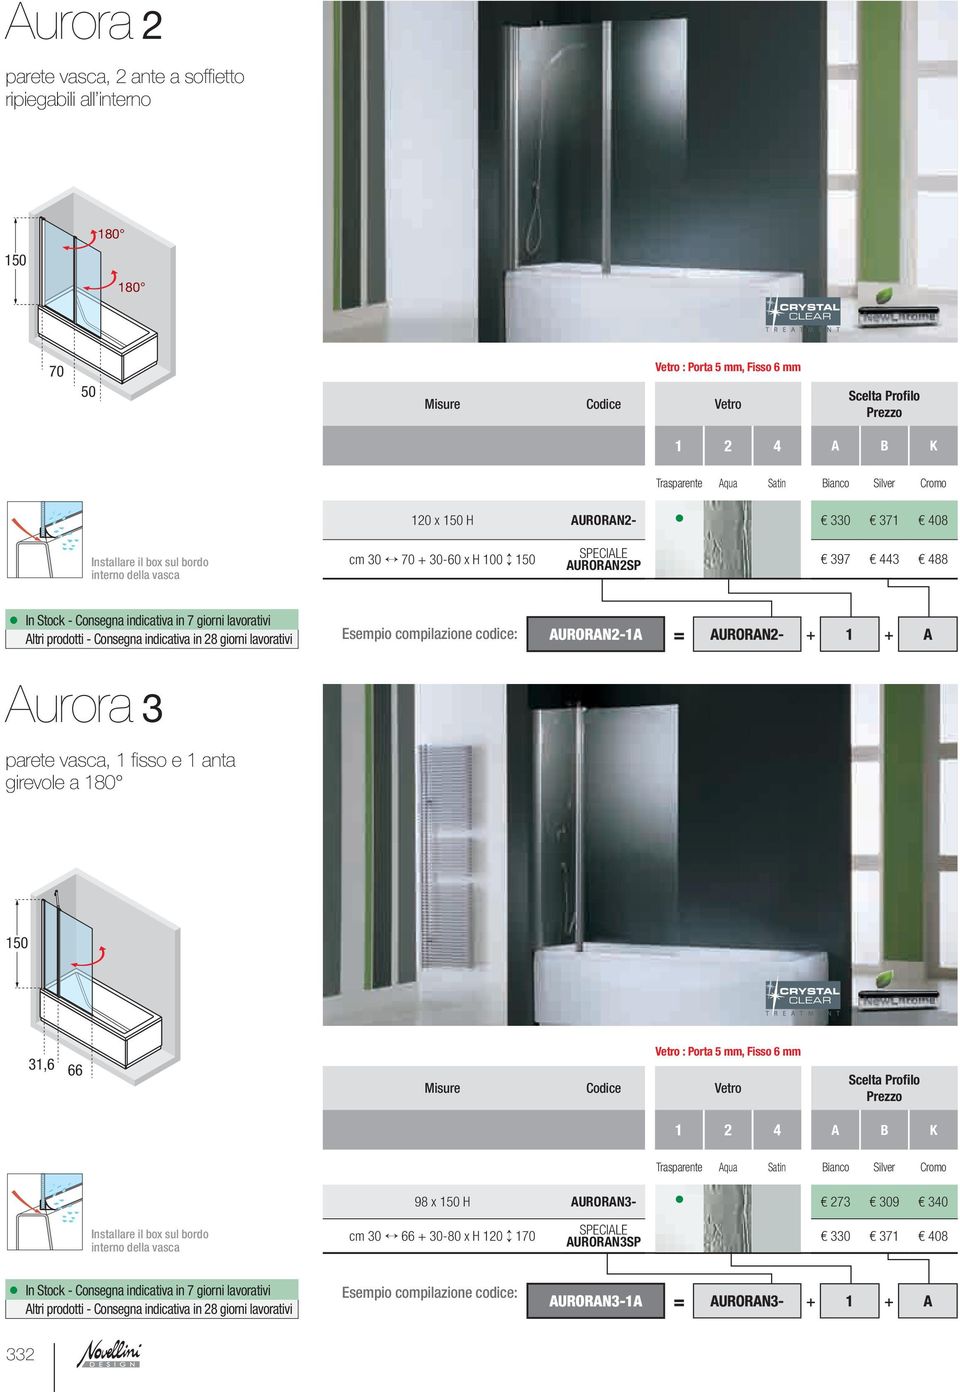 compilazione codice: AURORAN2-1A = AuRORAN2- + 1 + A Aurora 3 parete vasca, 1 fi sso e 1 anta girevole a 180 31,6 66 vetro : Porta 5 mm, Fisso 6 mm Misure Codice Vetro 1 2 4 A b K Trasparente Aqua